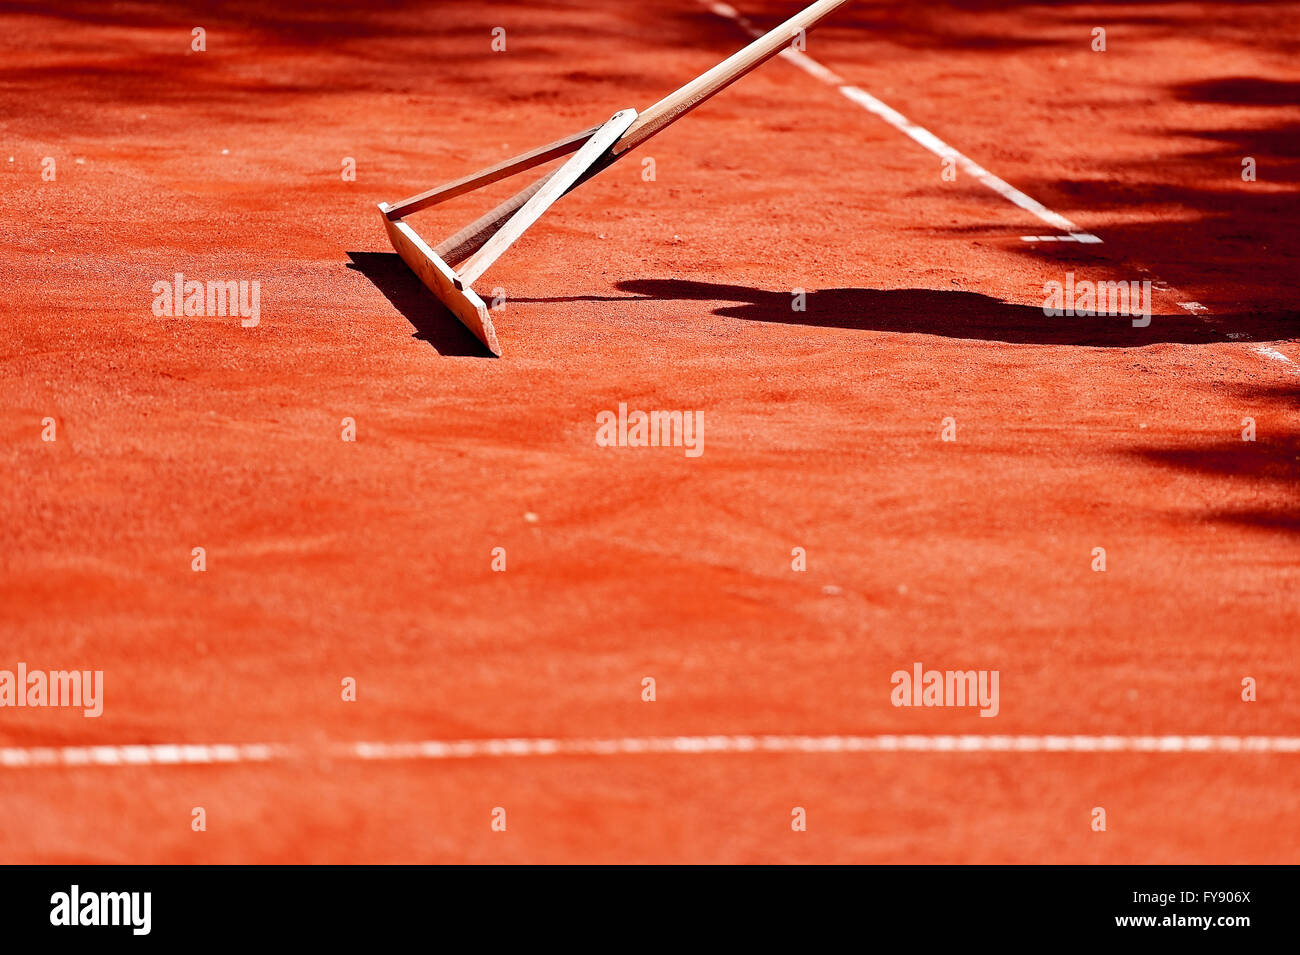 L'entretien d'un cour de tennis en terre battue avec un râteau Photo Stock  - Alamy